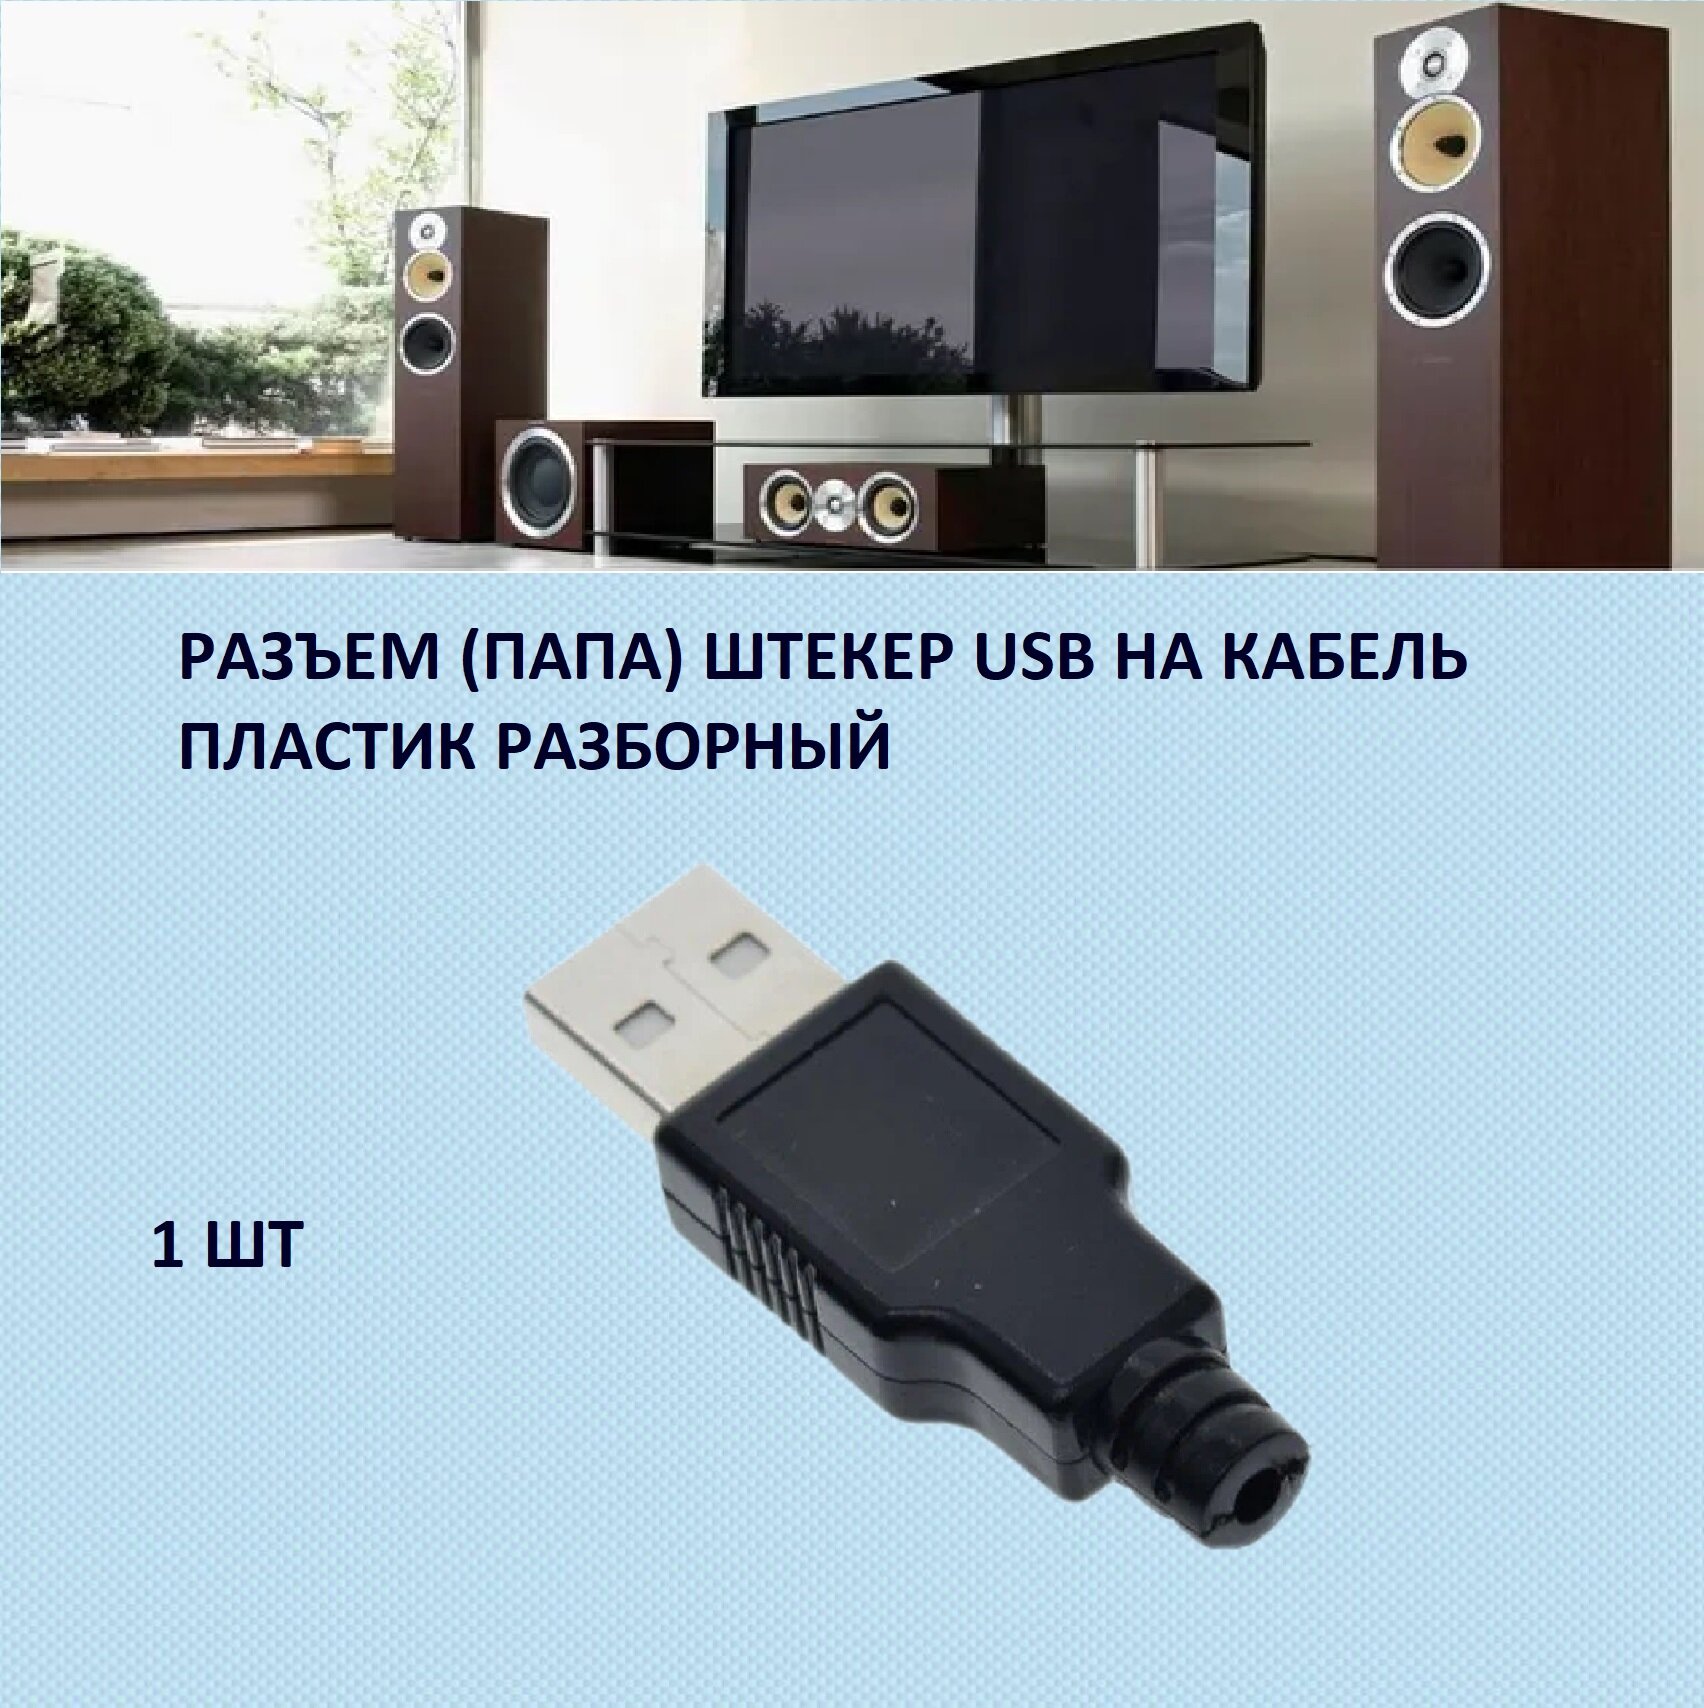 Разъем USB 2.0 (А) штекер разборный на кабель под пайку